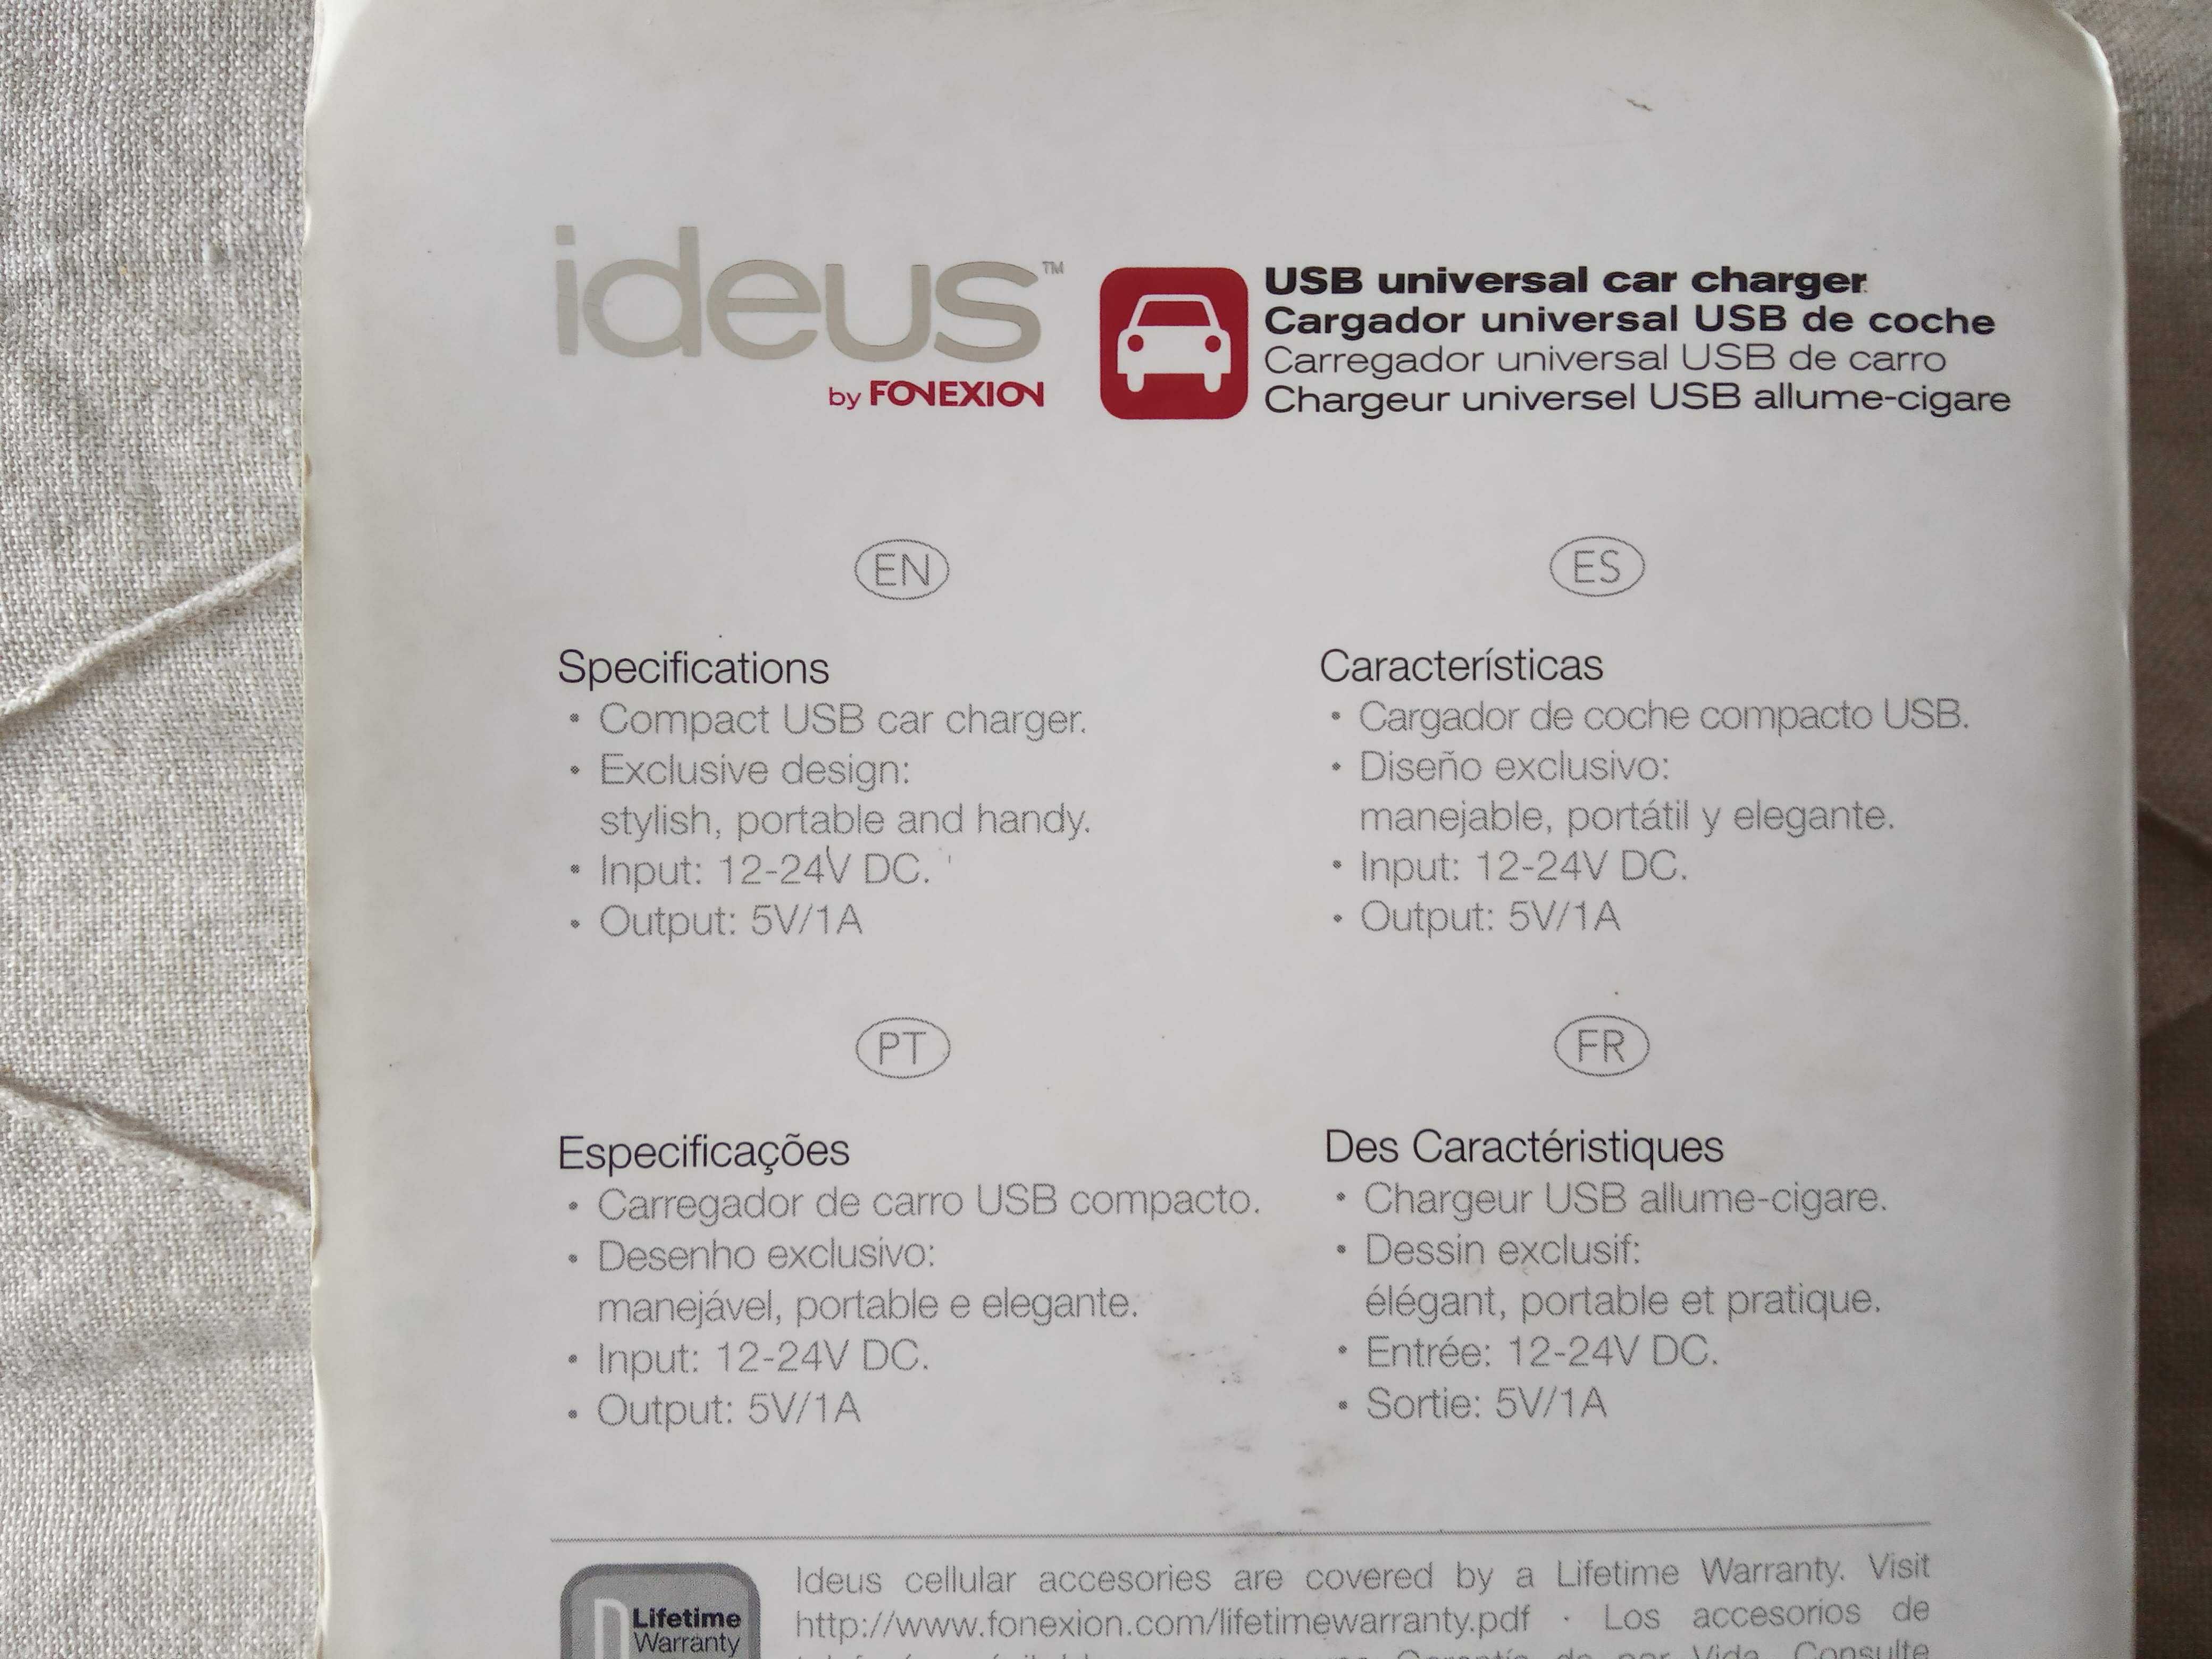 PS Vita/Carregador de carro USB/Ideus